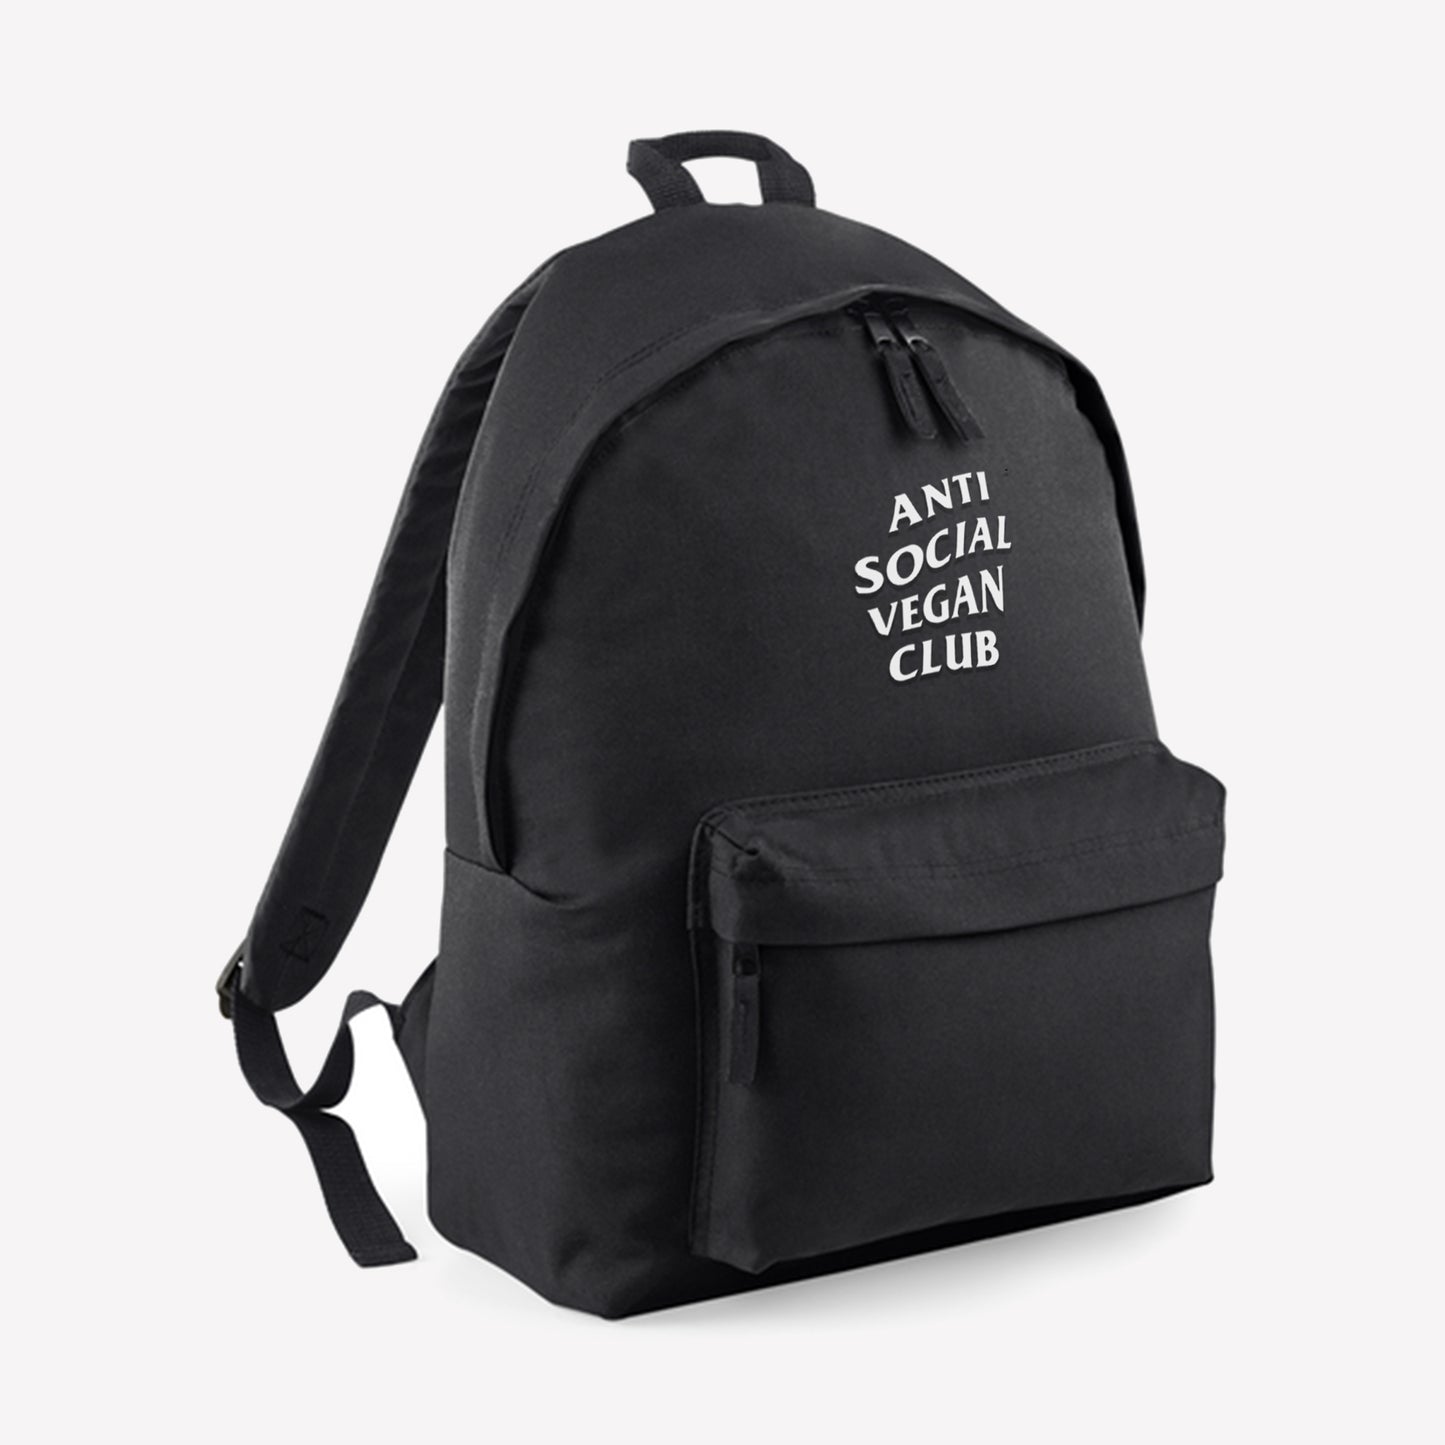 Anti Social Vegan Club Backpack - Anti Social Vegan Club